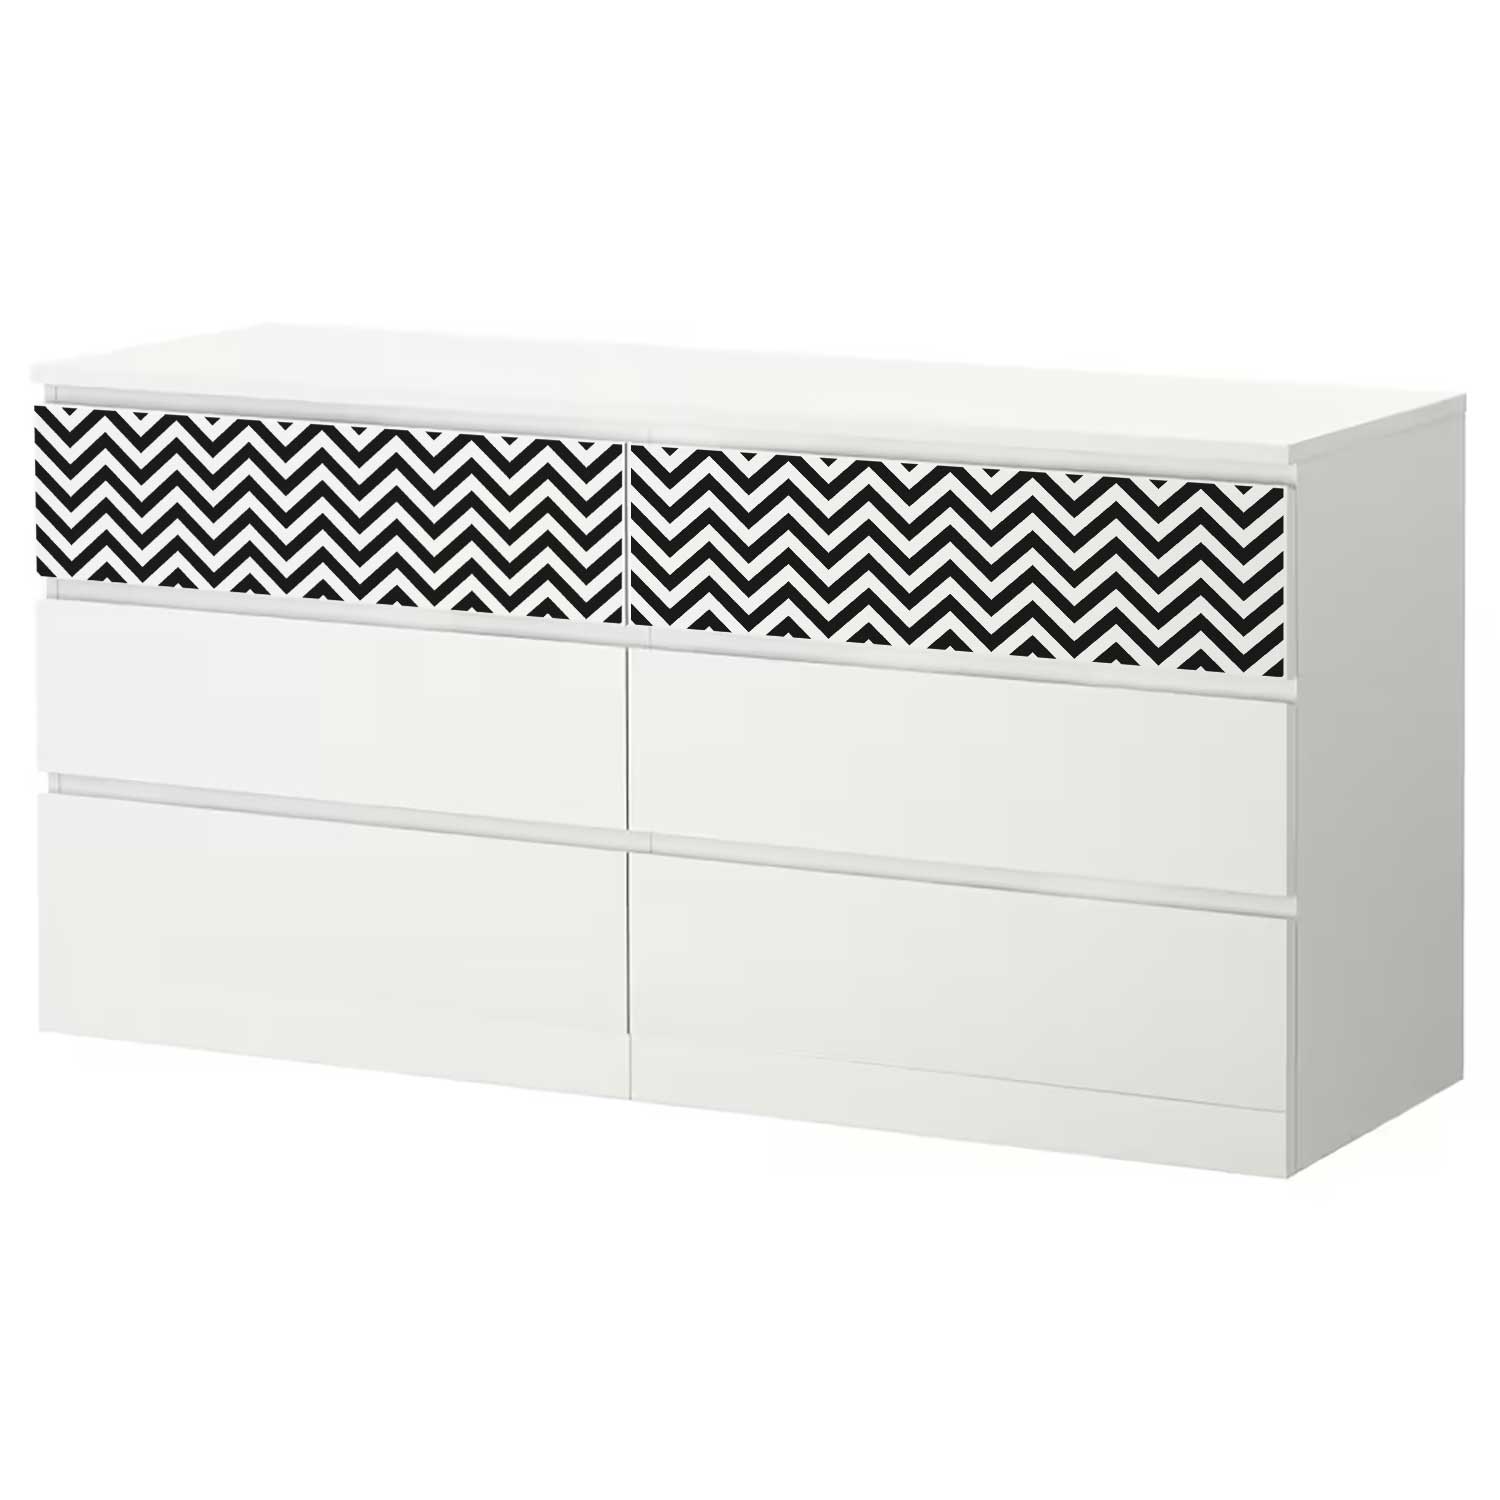 Möbelfolie für IKEA MALM Kommode 6-Schubladen 160x78 cm 'Zigzag'